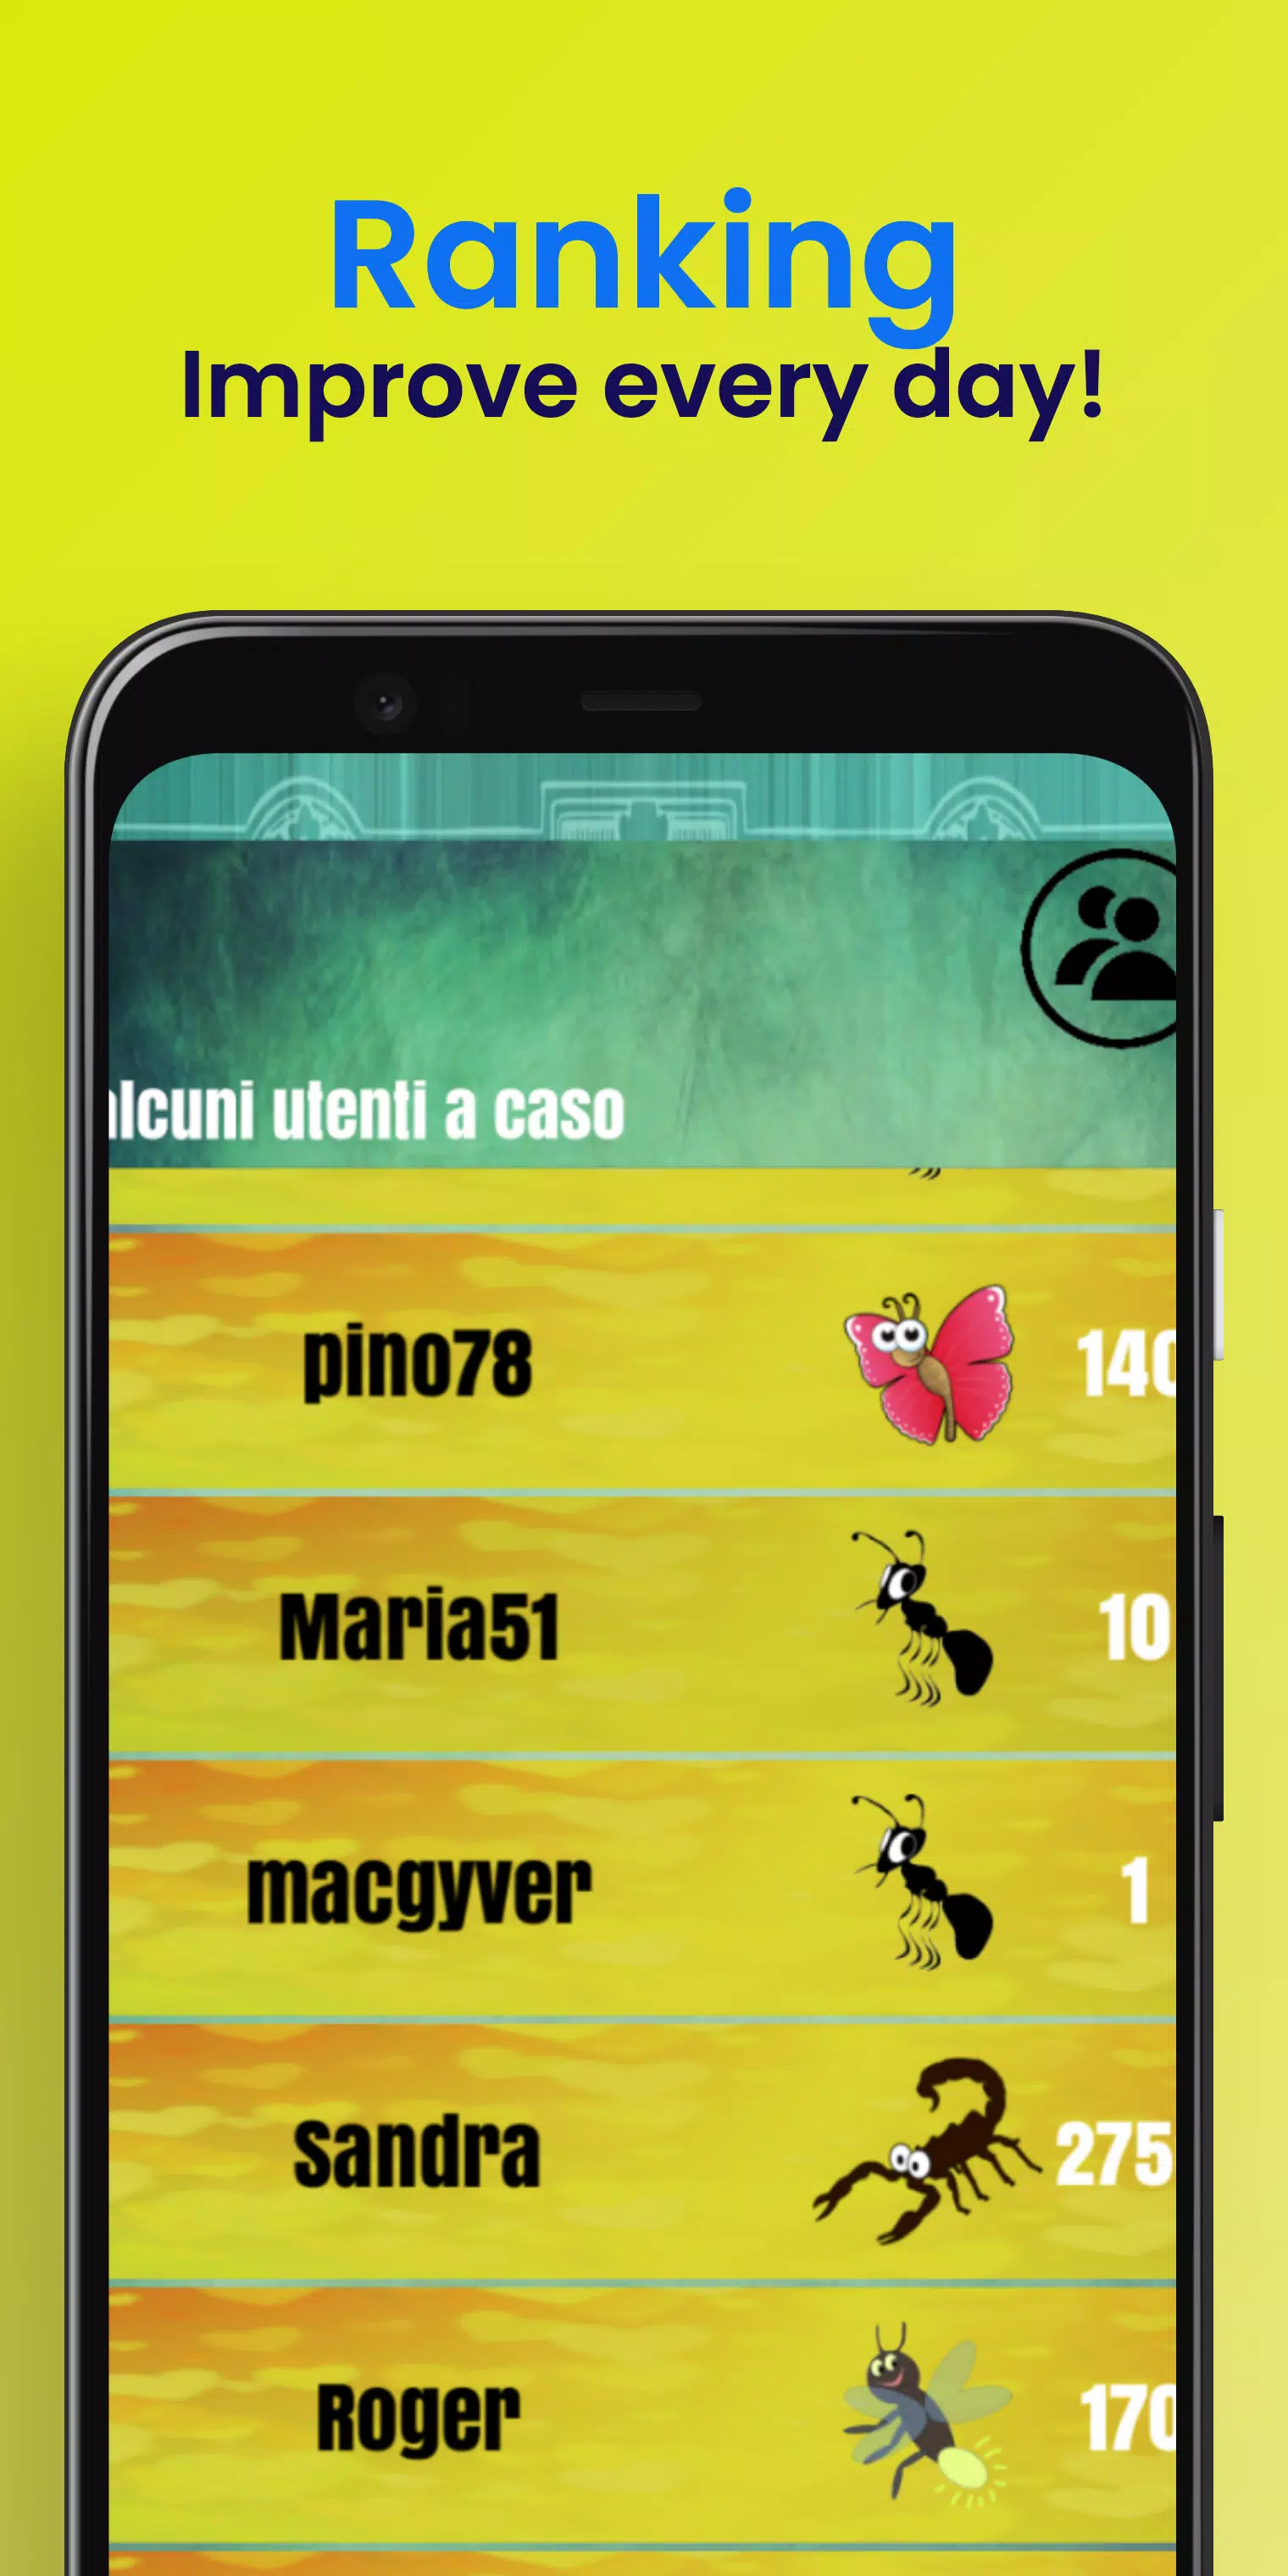 Download do APK de Buraco online - jogo de cartas para Android